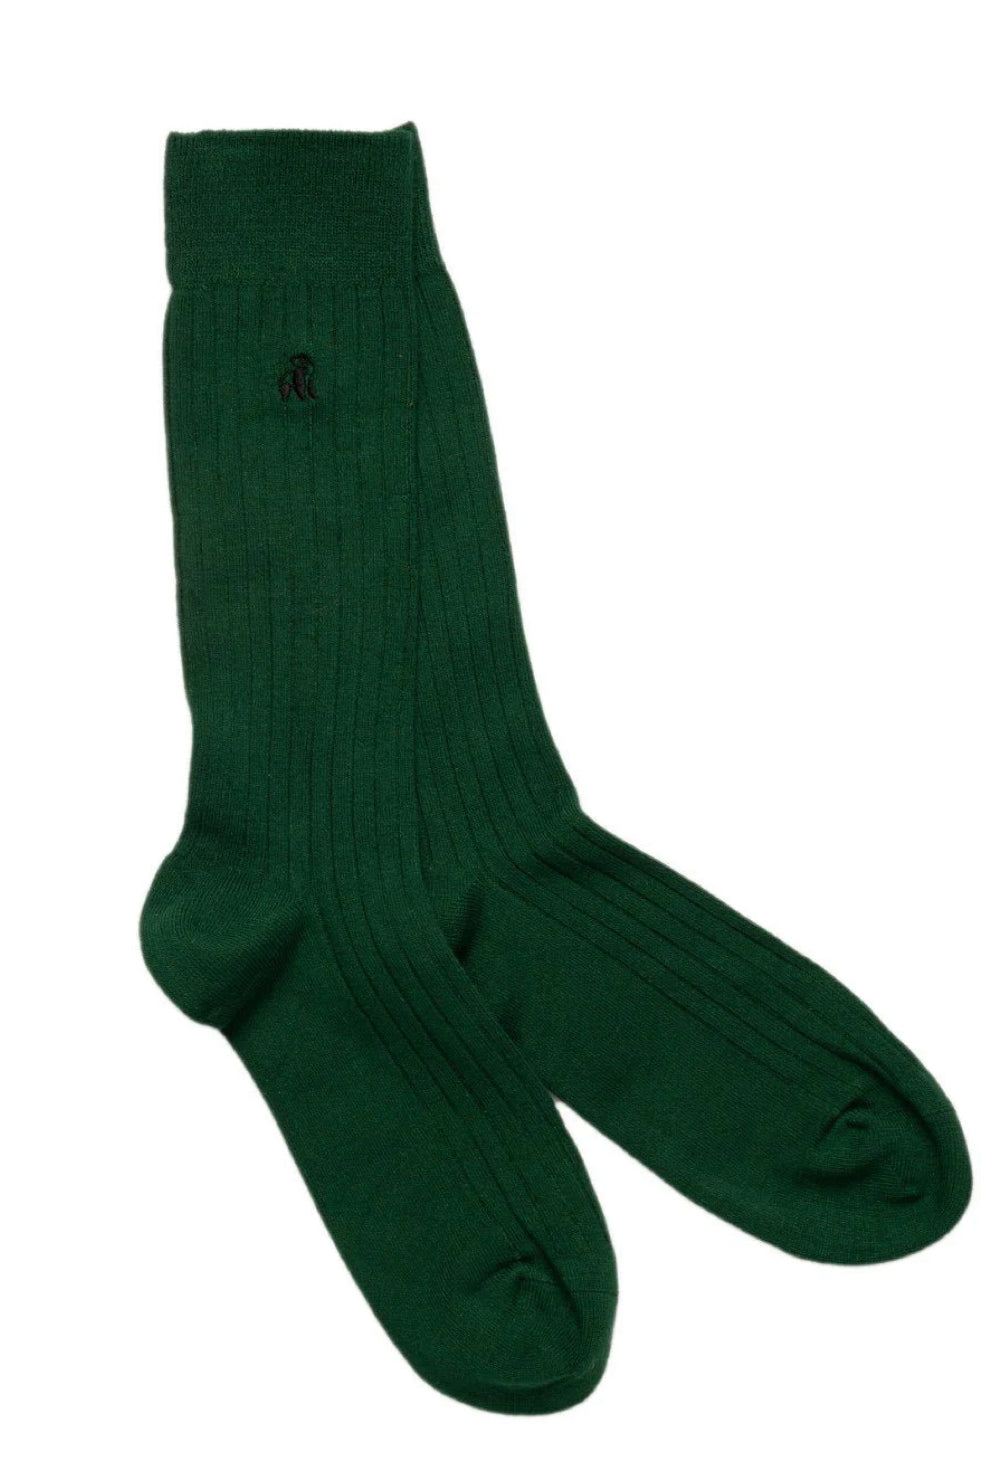 Green Socks by Swole Panda